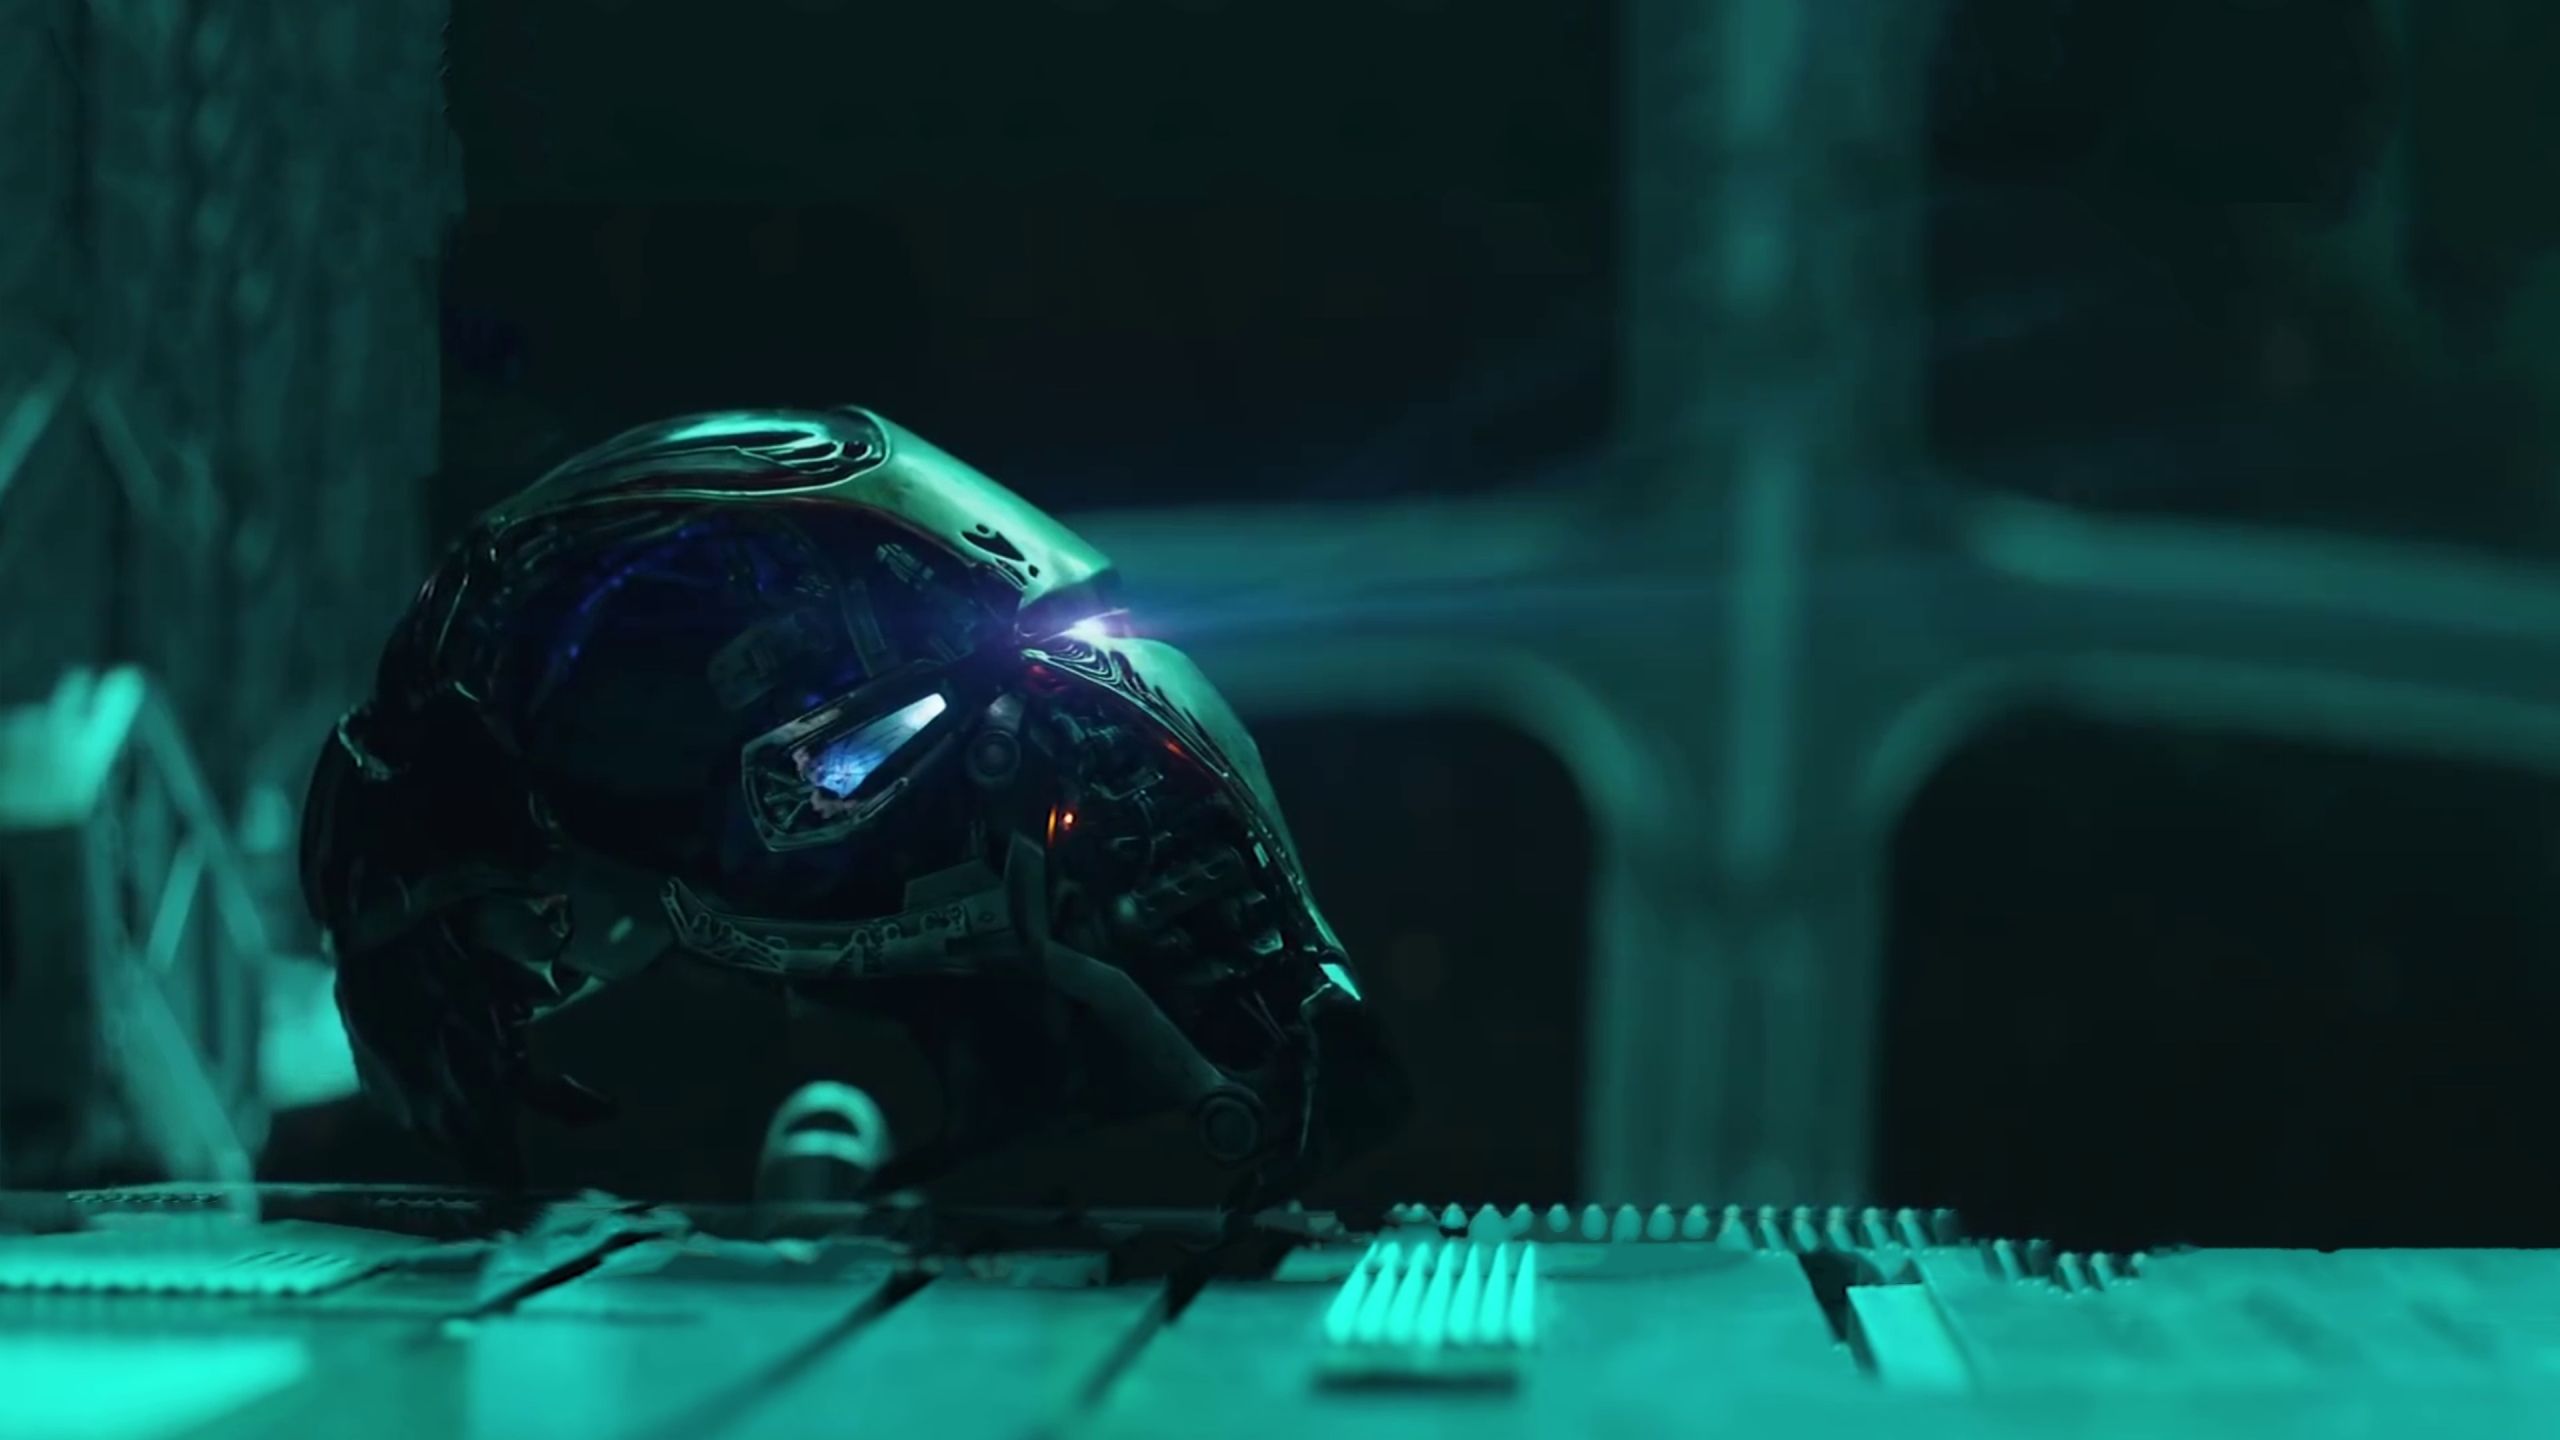 Iron Man Helmet From Avengers Endgame 1440P Resolution